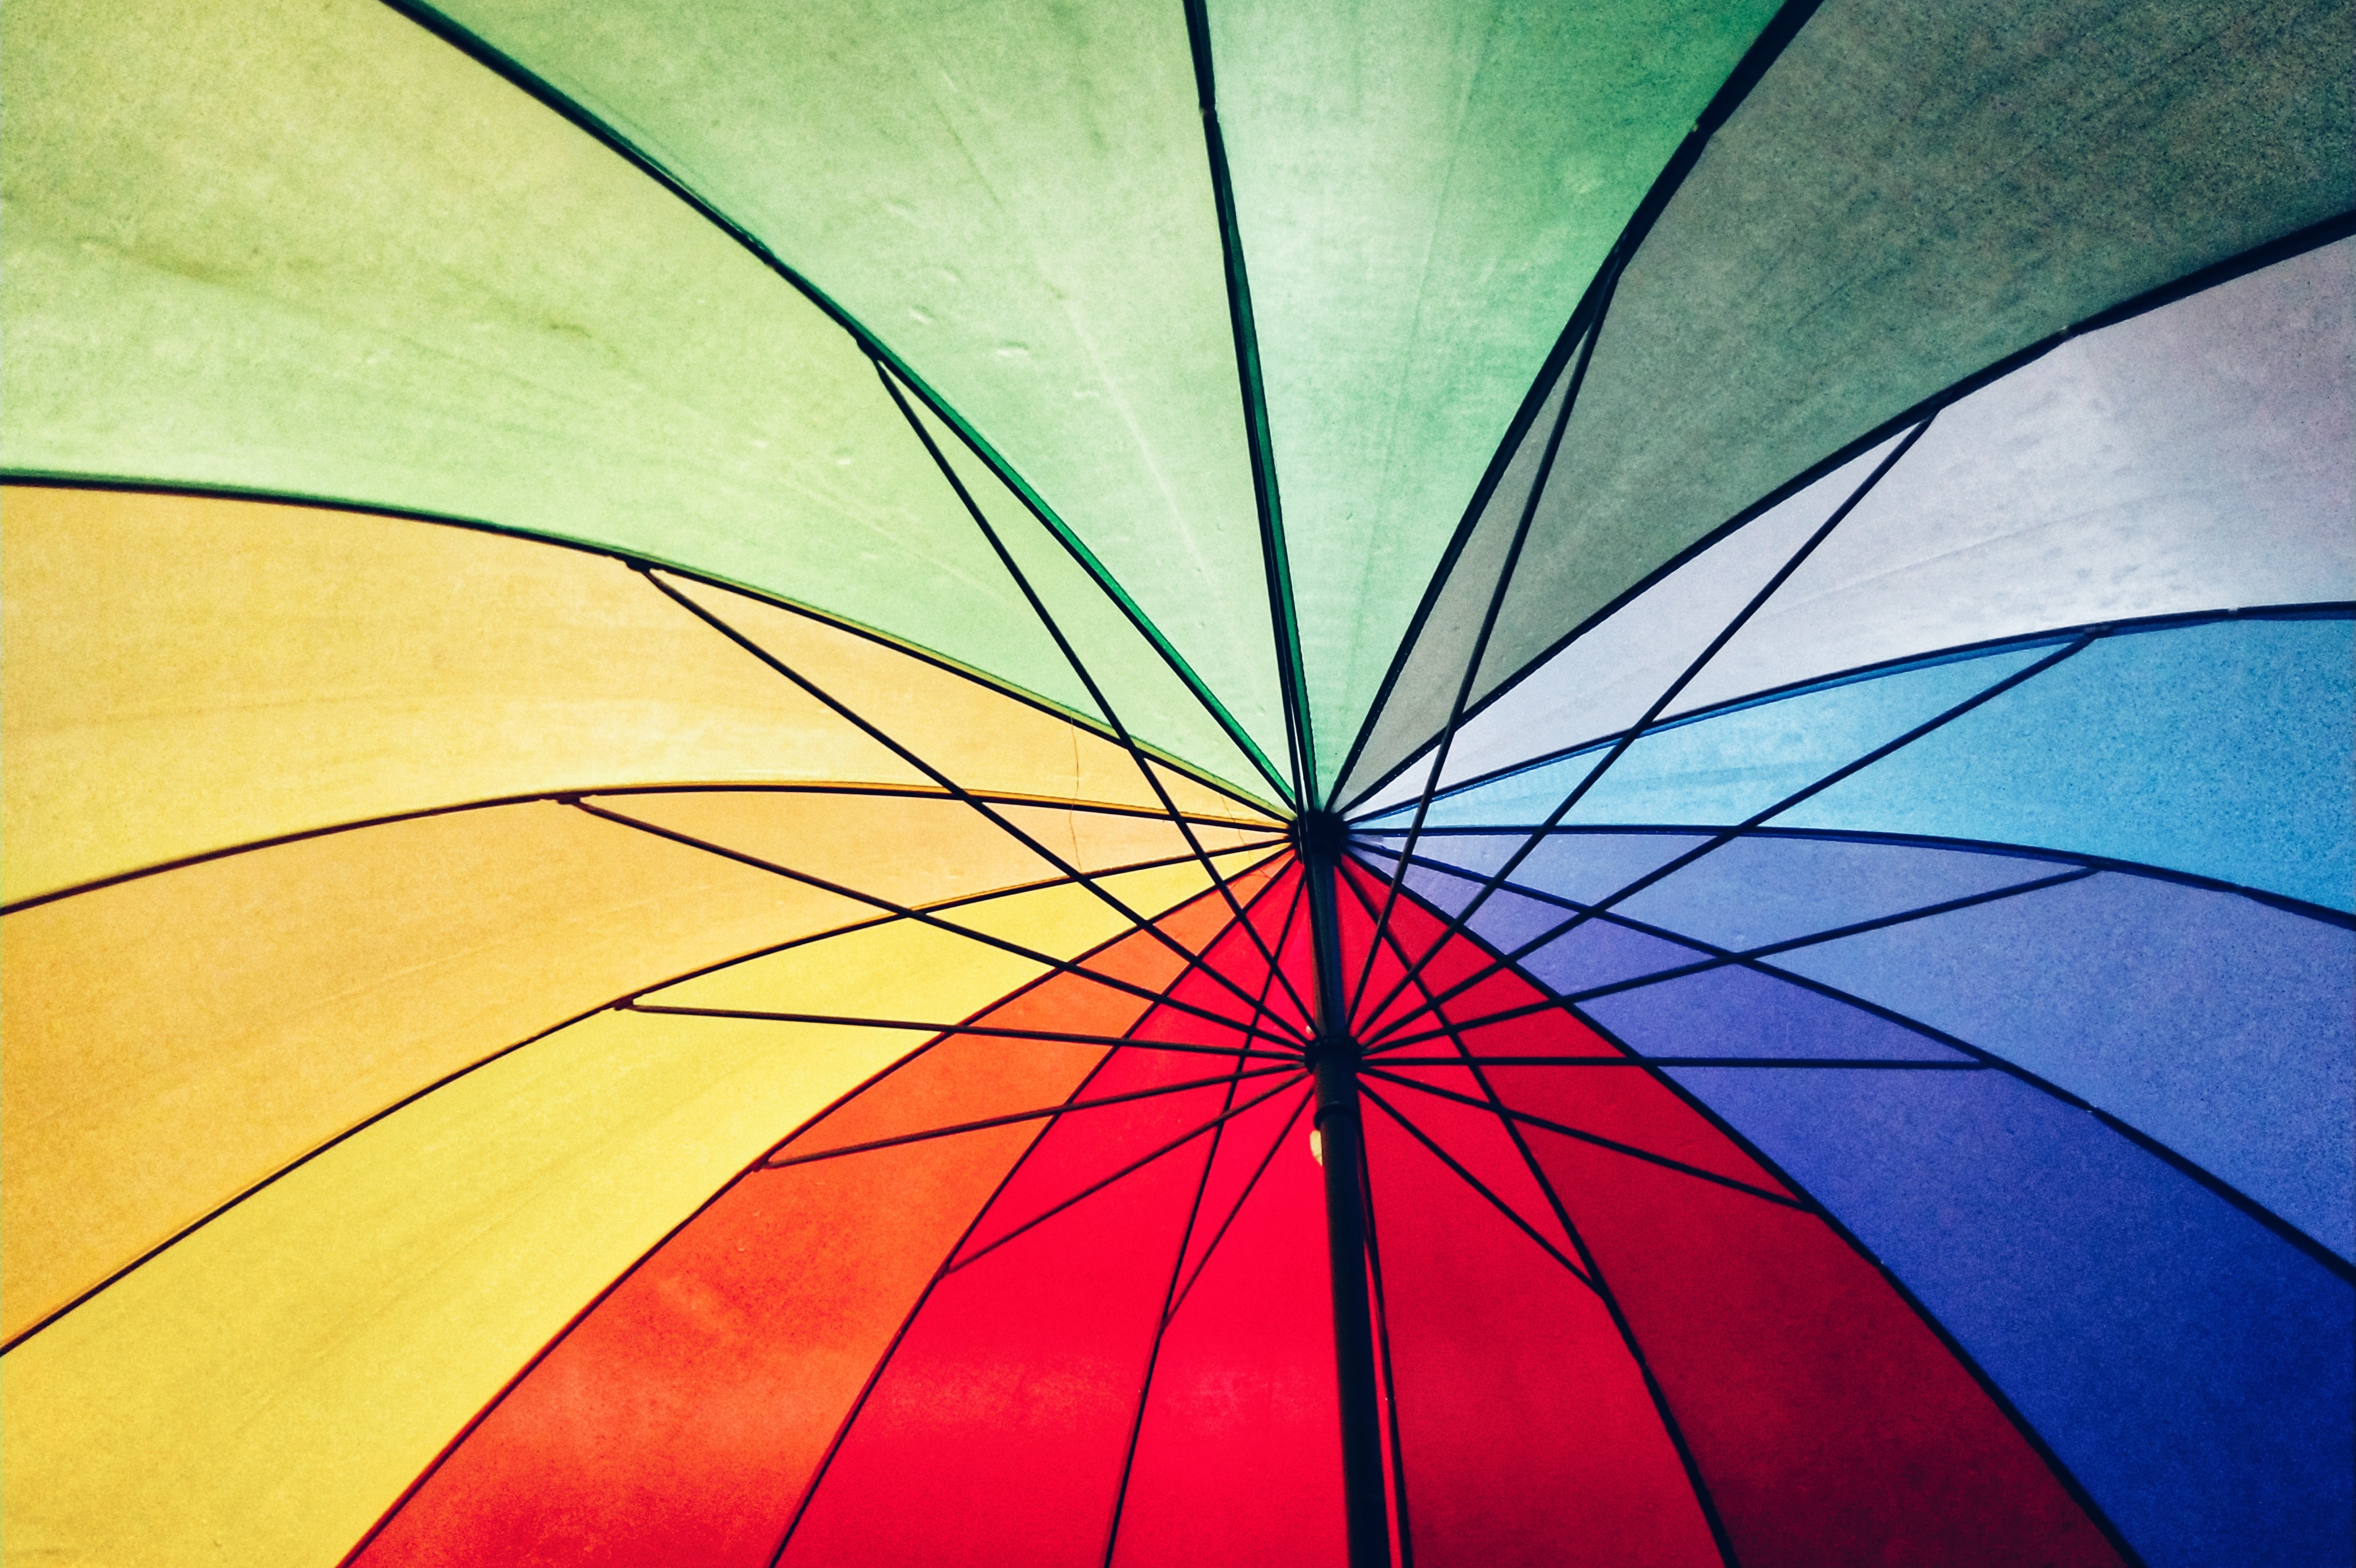 Bildebeskrivelse: Innsiden av en paraply med regnbuefarger